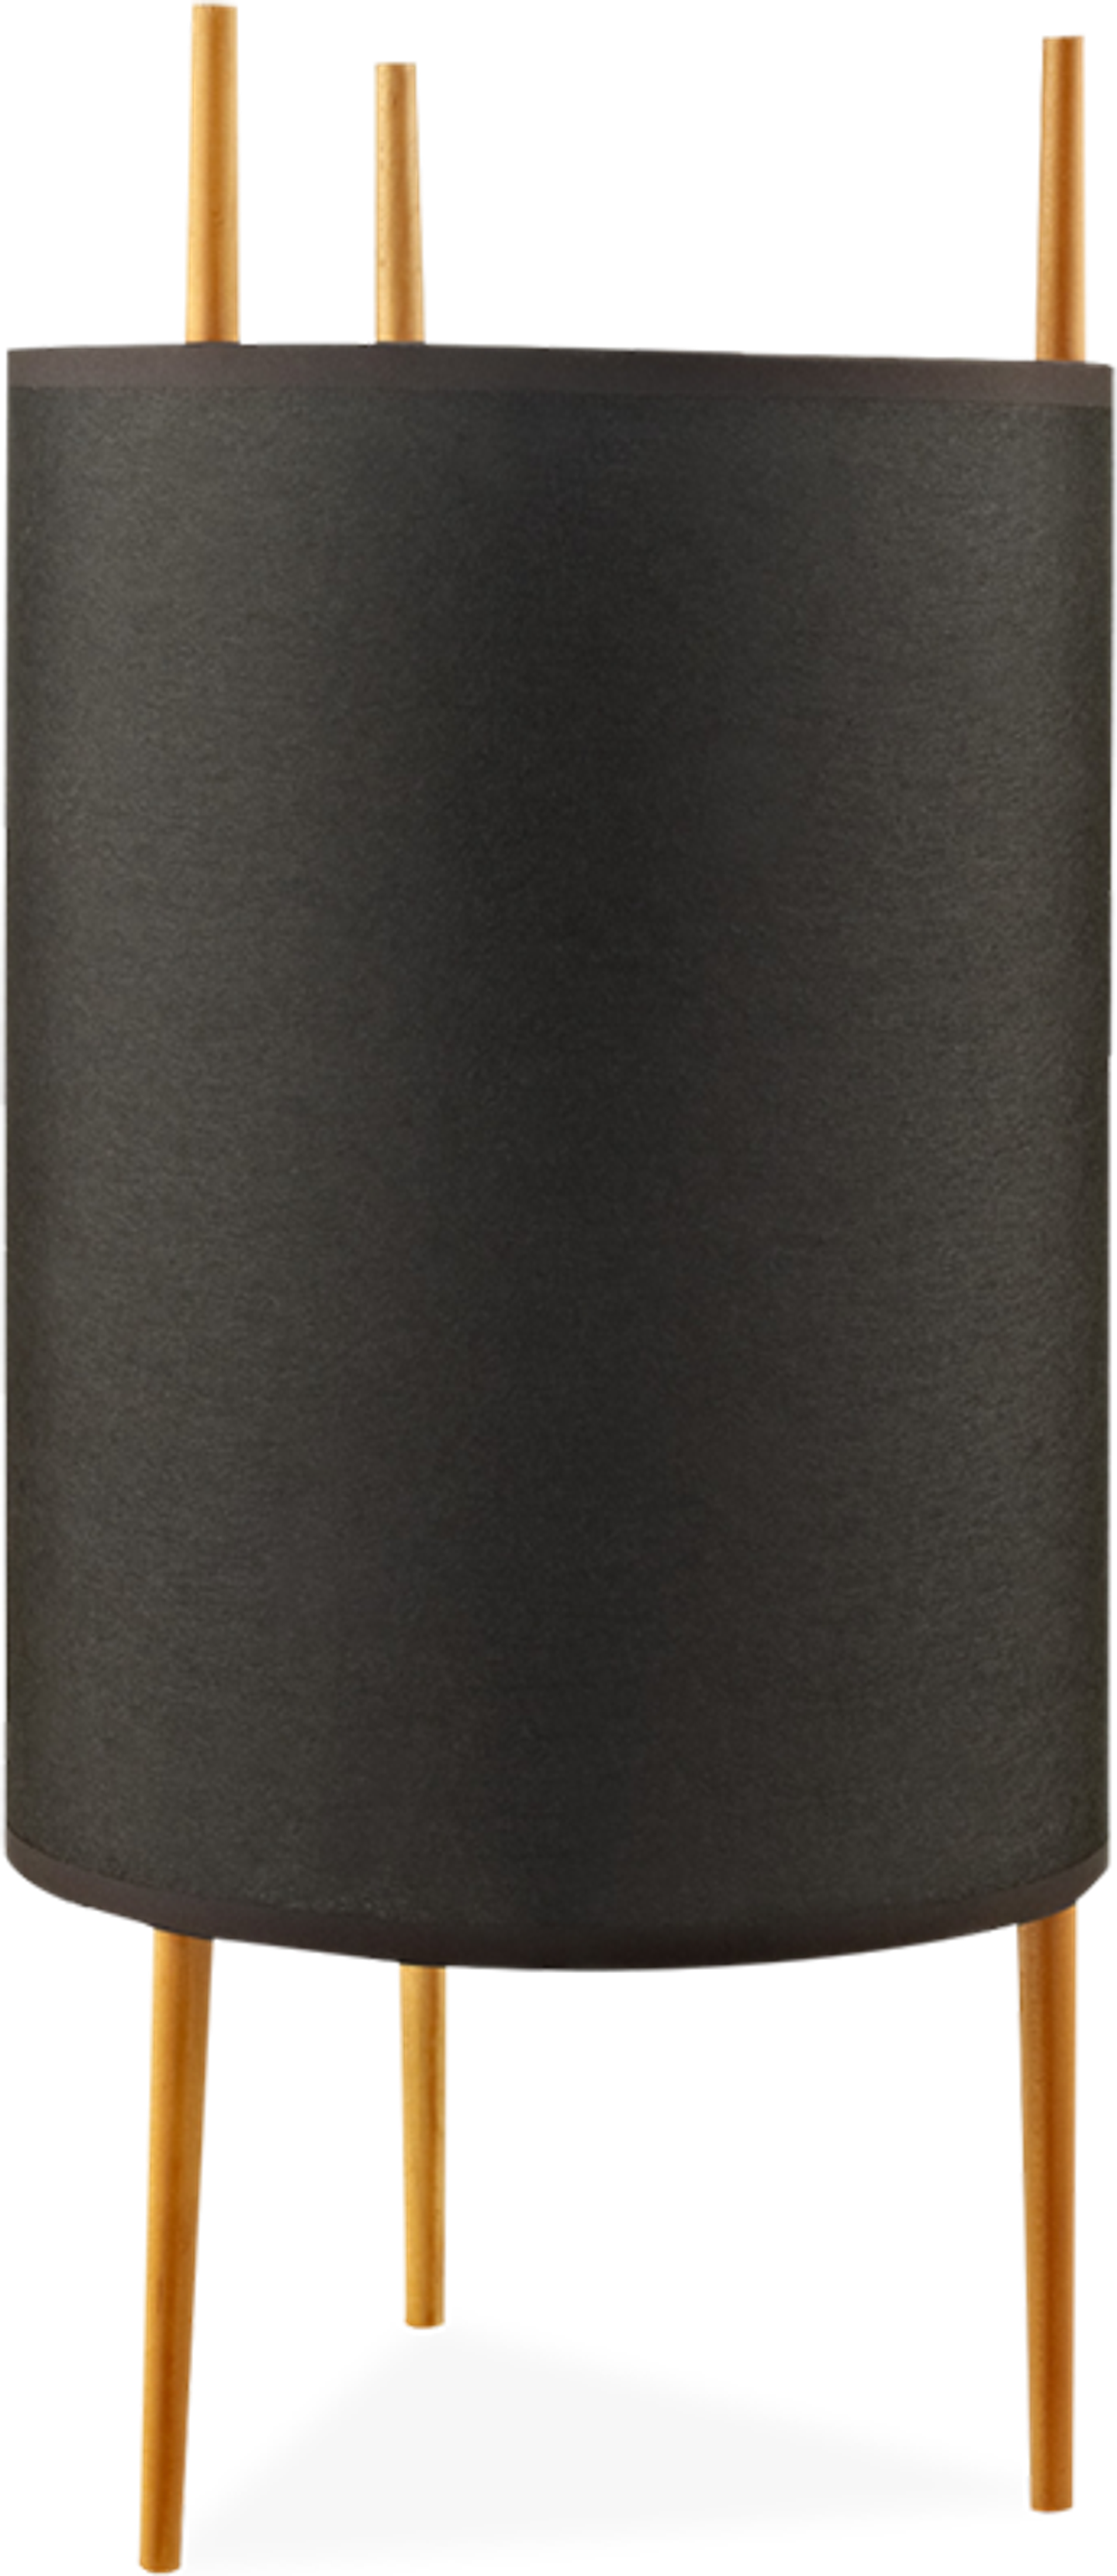 Cylinder Style Lamp Black image.